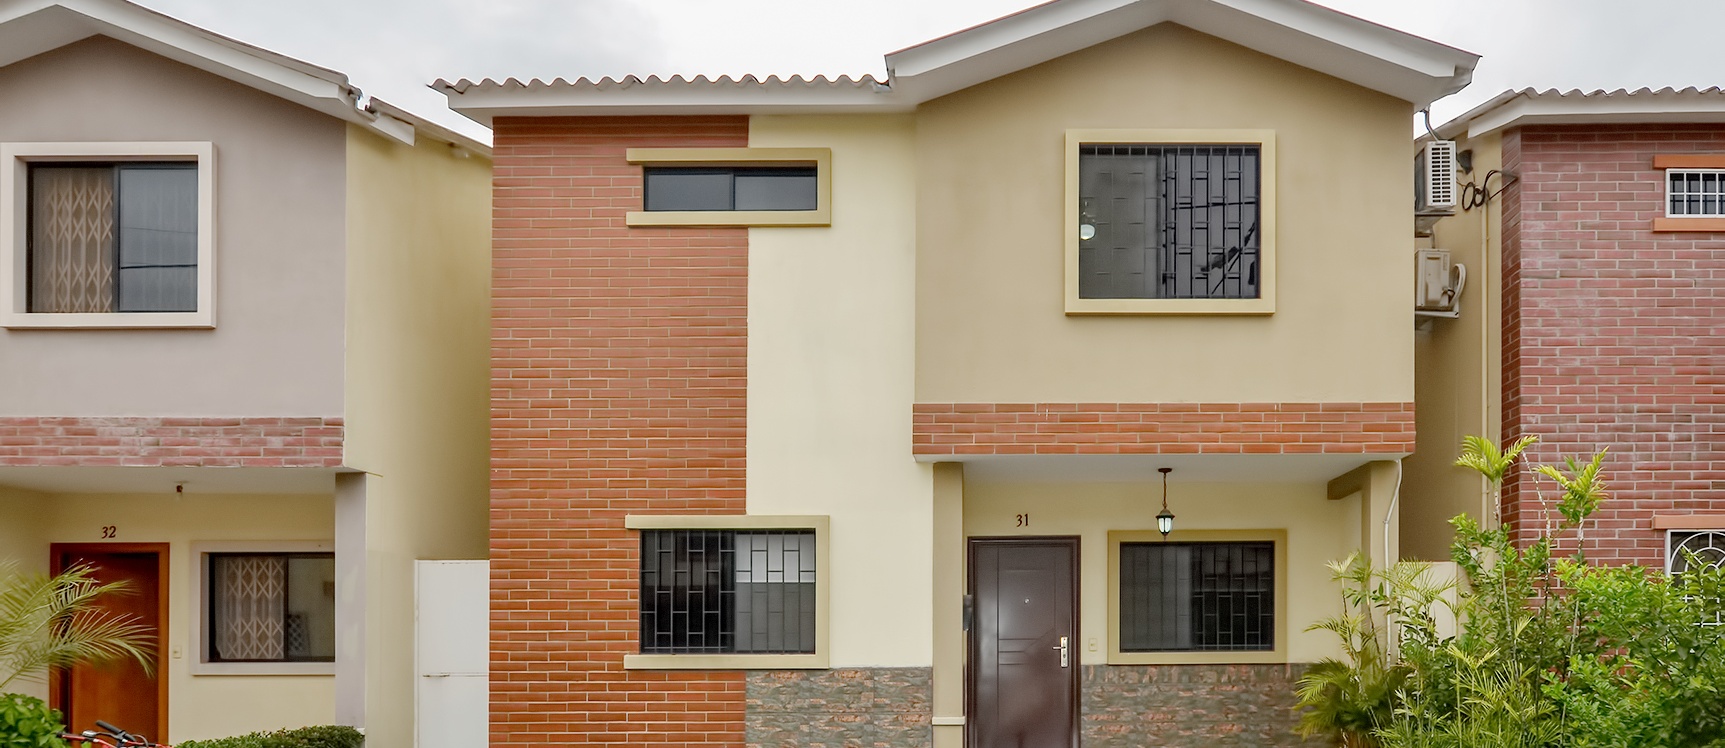 GeoBienes - Casa en venta en urbanización Milann sector Vía Salitre - Samborondón - Plusvalia Guayaquil Casas de venta y alquiler Inmobiliaria Ecuador